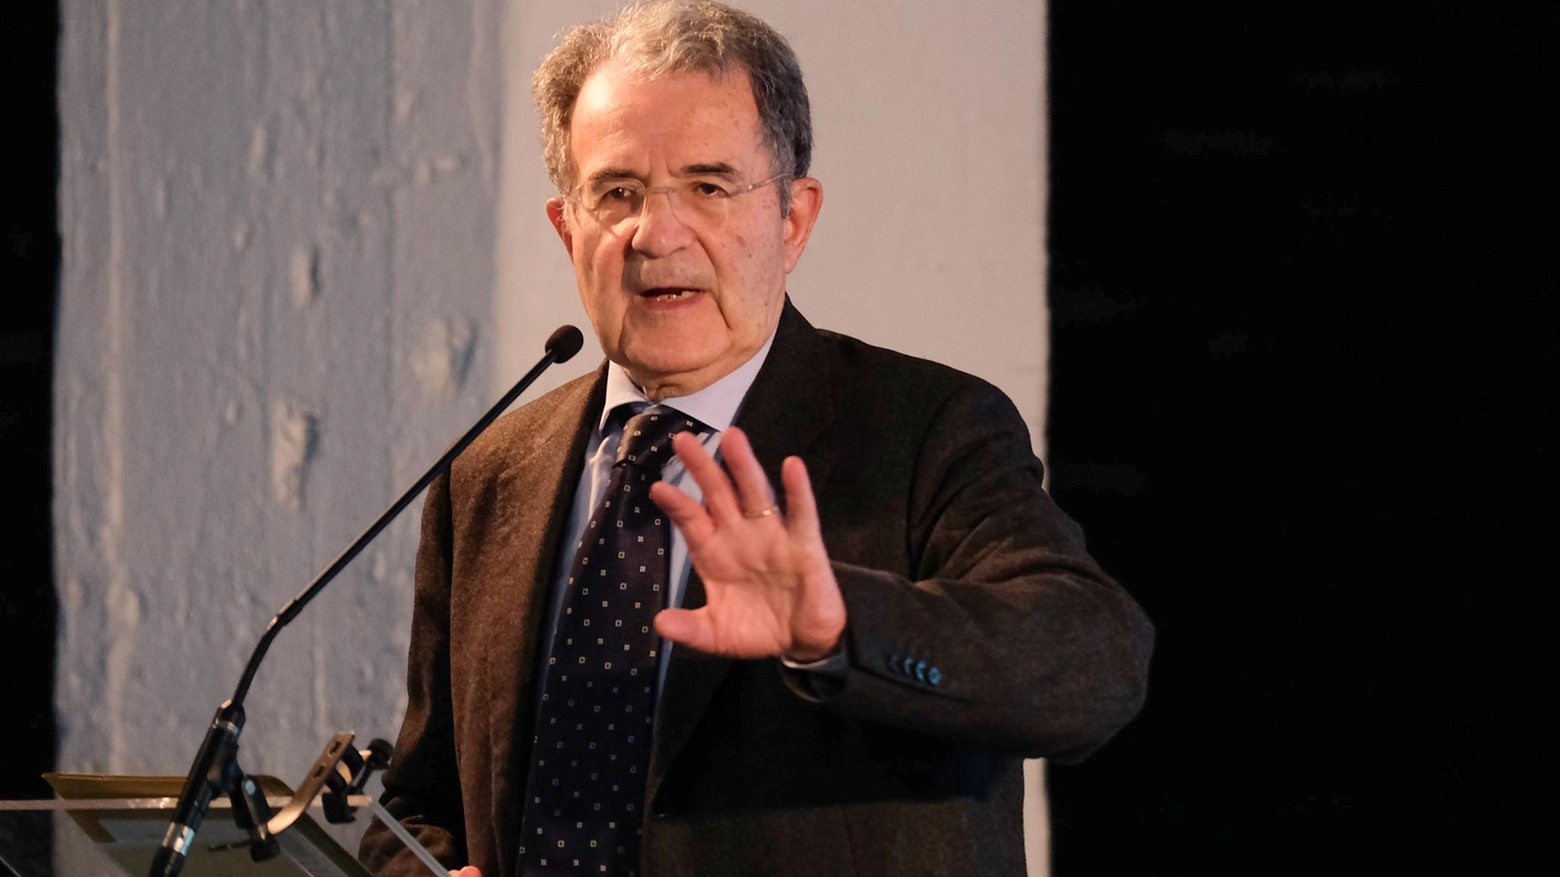 Romano Prodi (Newpresse)